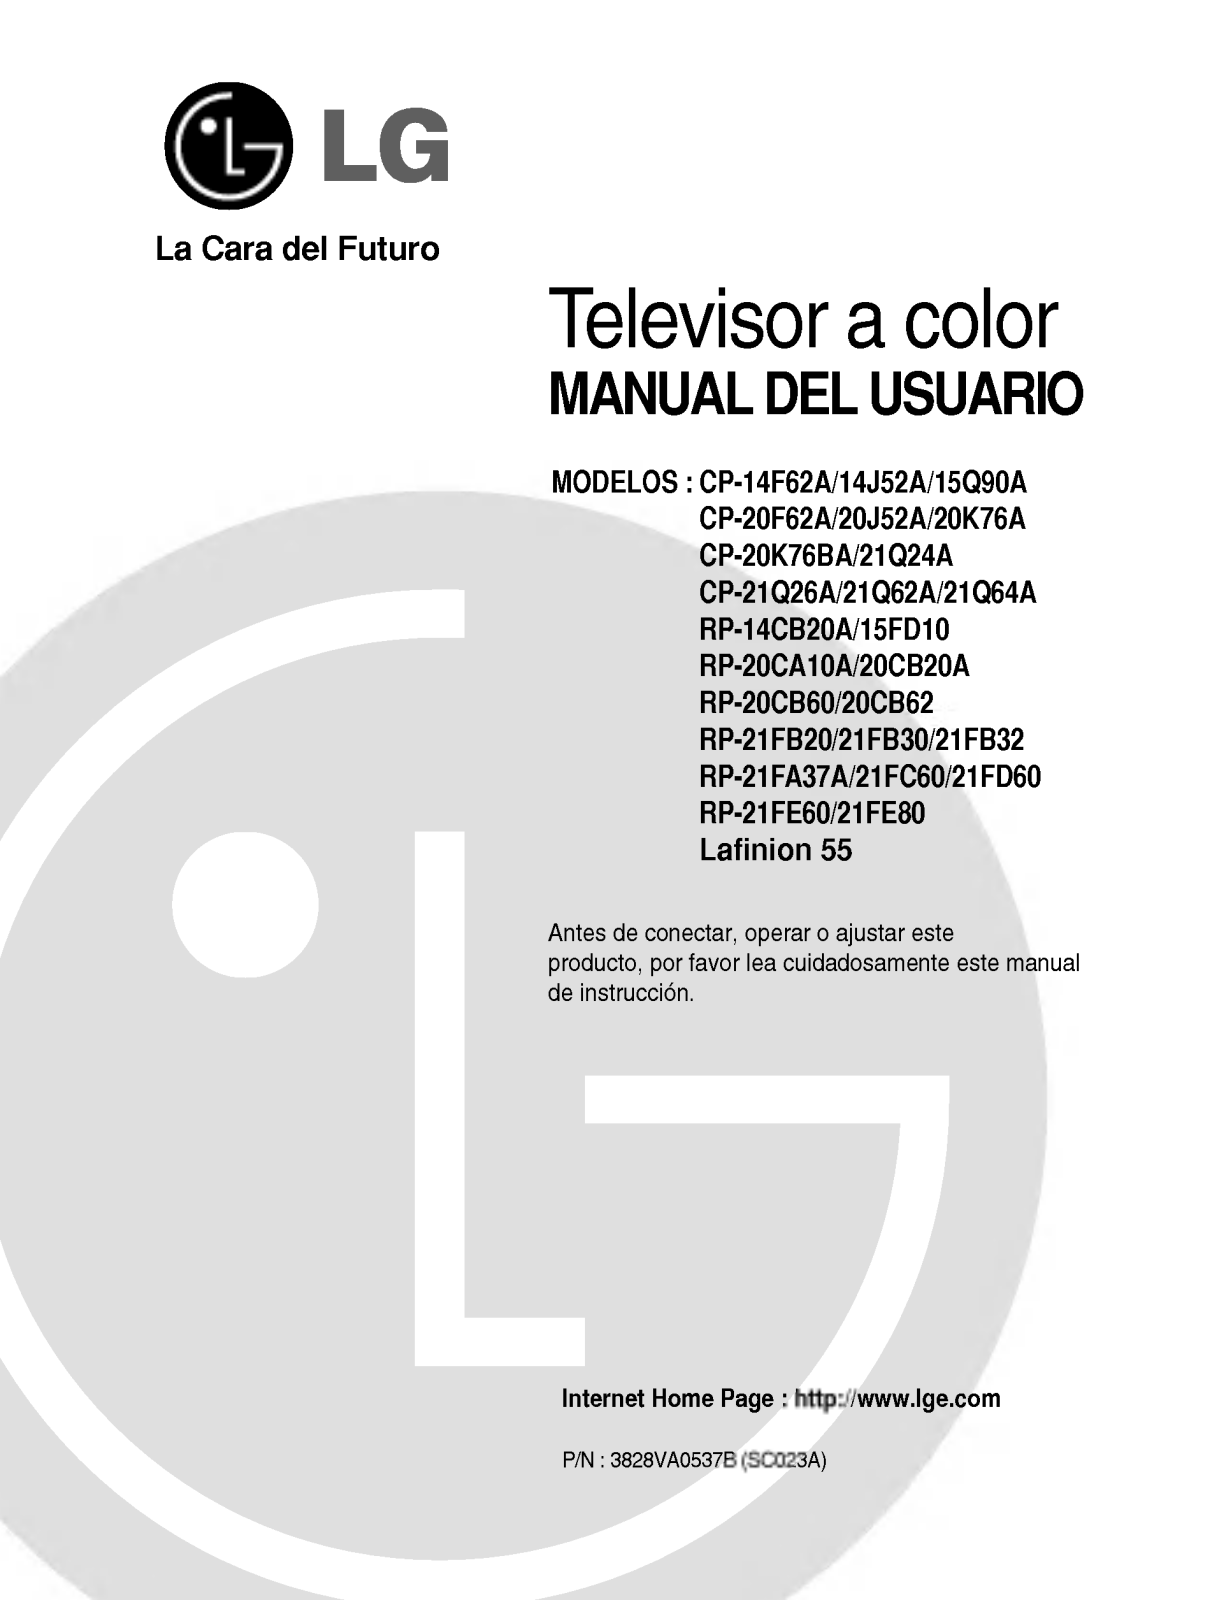 LG RP-21FE60 Owner's Manual